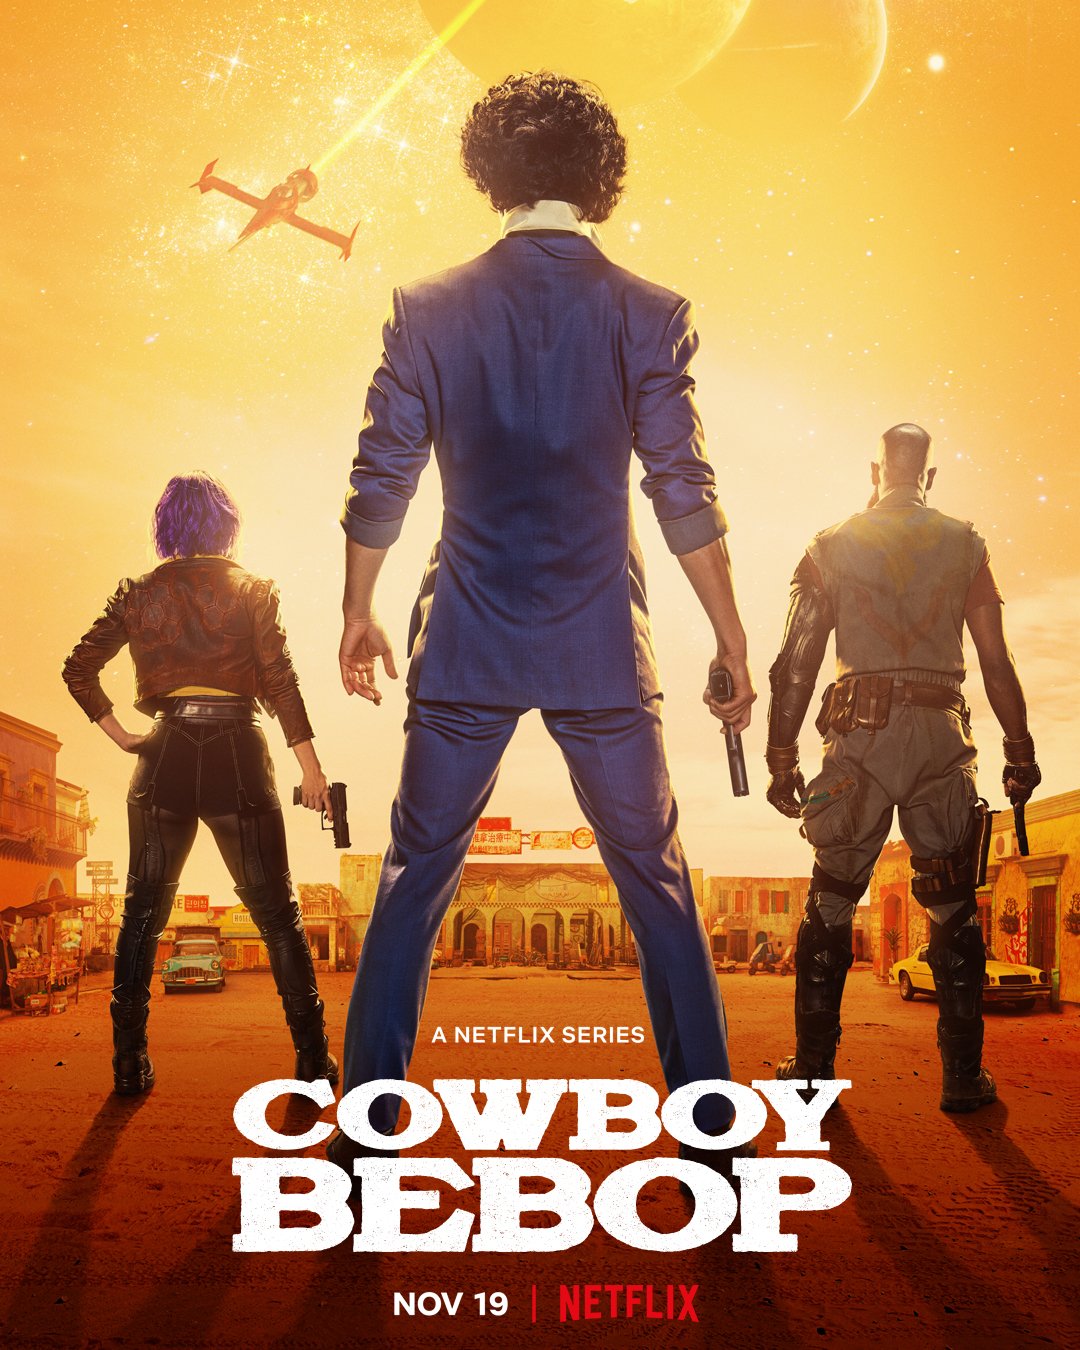 Netflix: pacote de animes e séries inclui Cowboy Bebop e Ultraman - Meio Bit